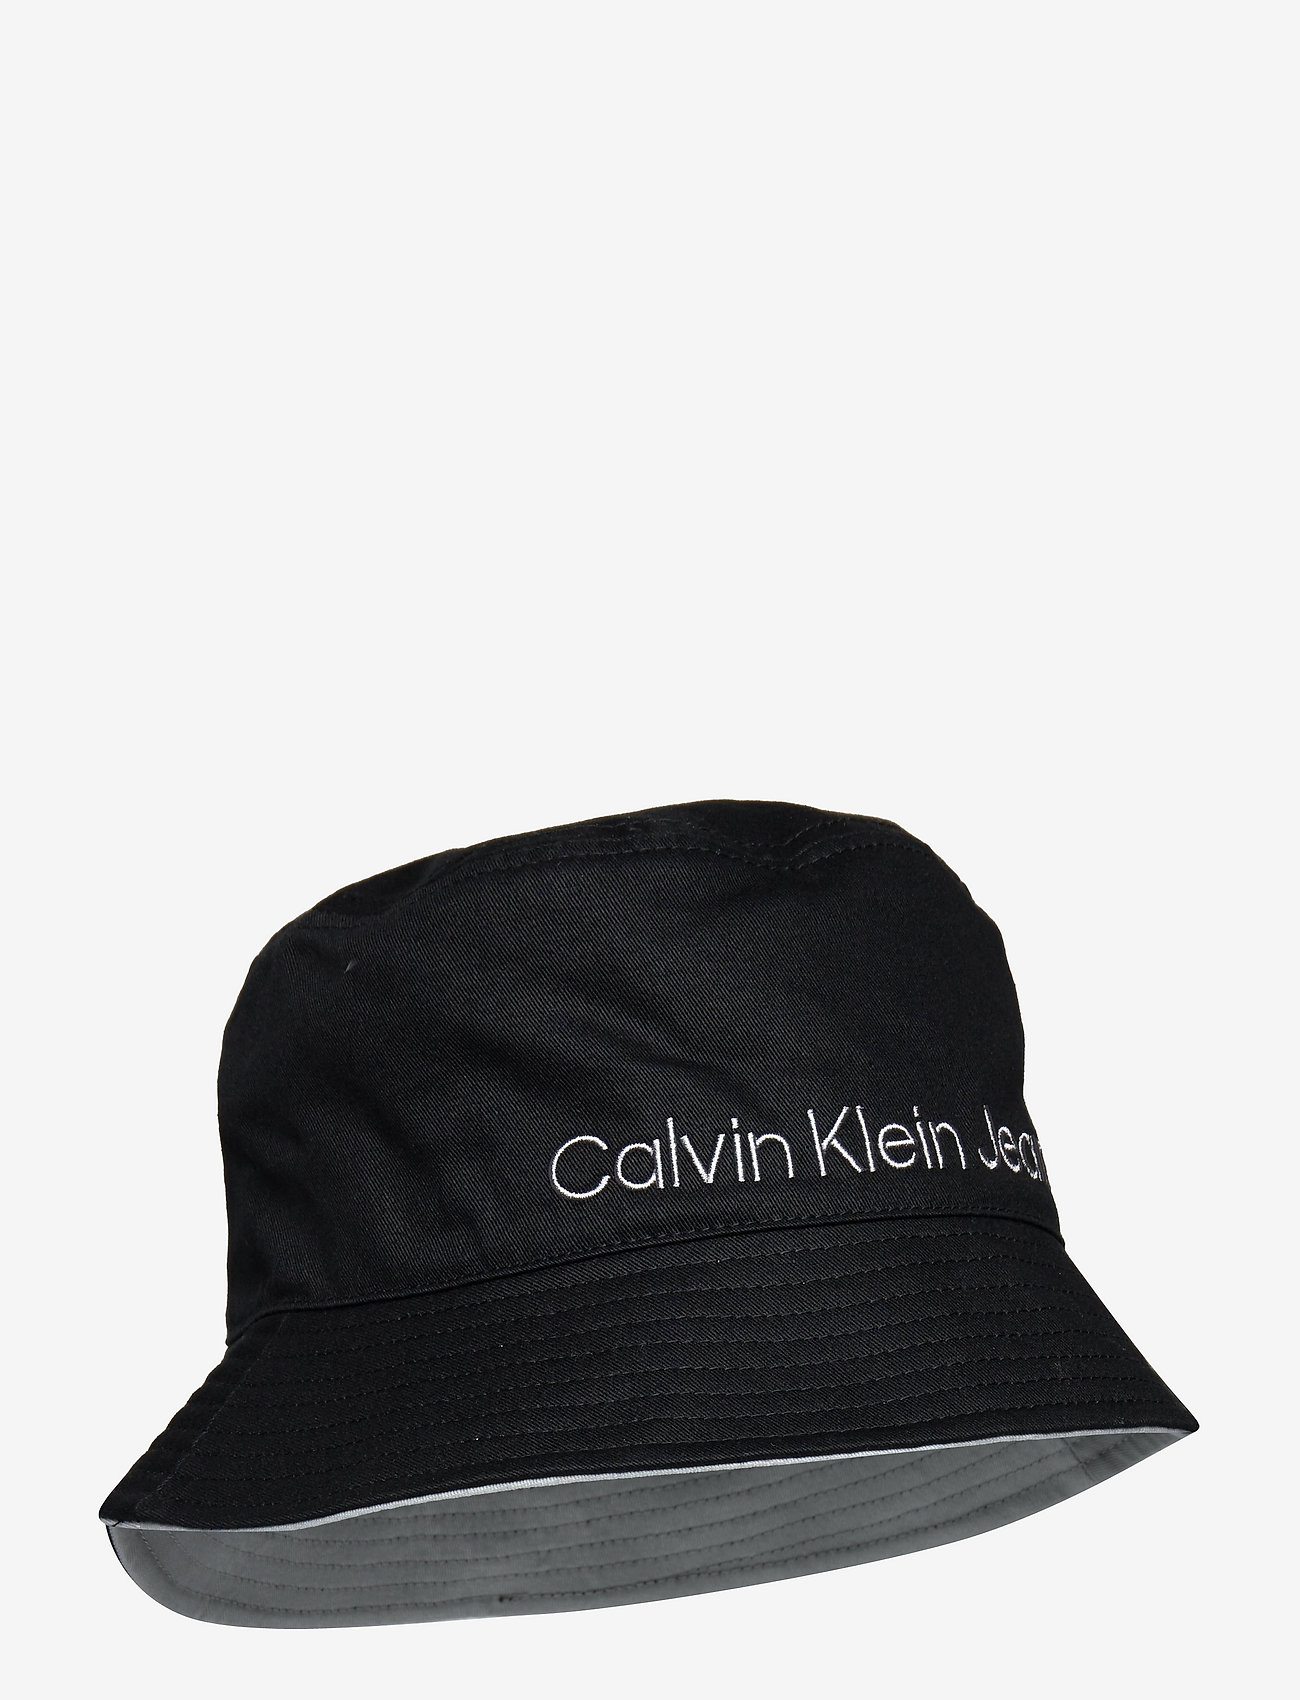 Calvin Klein - LOGO BUCKET HAT - ck black - 0